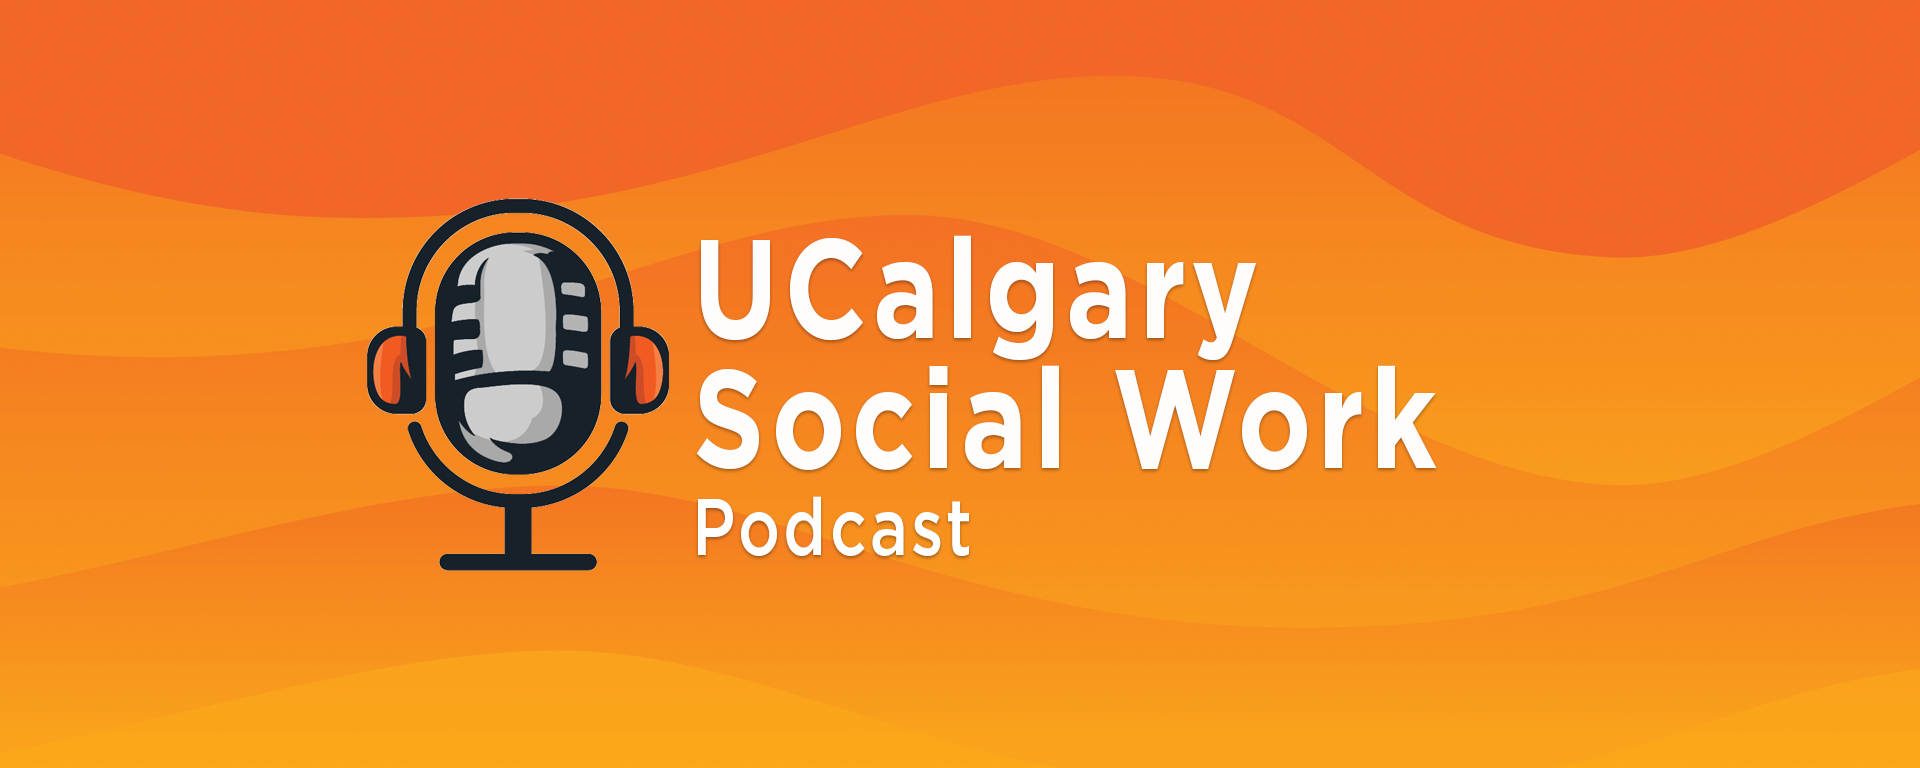  UCalgary Social Work Podcast